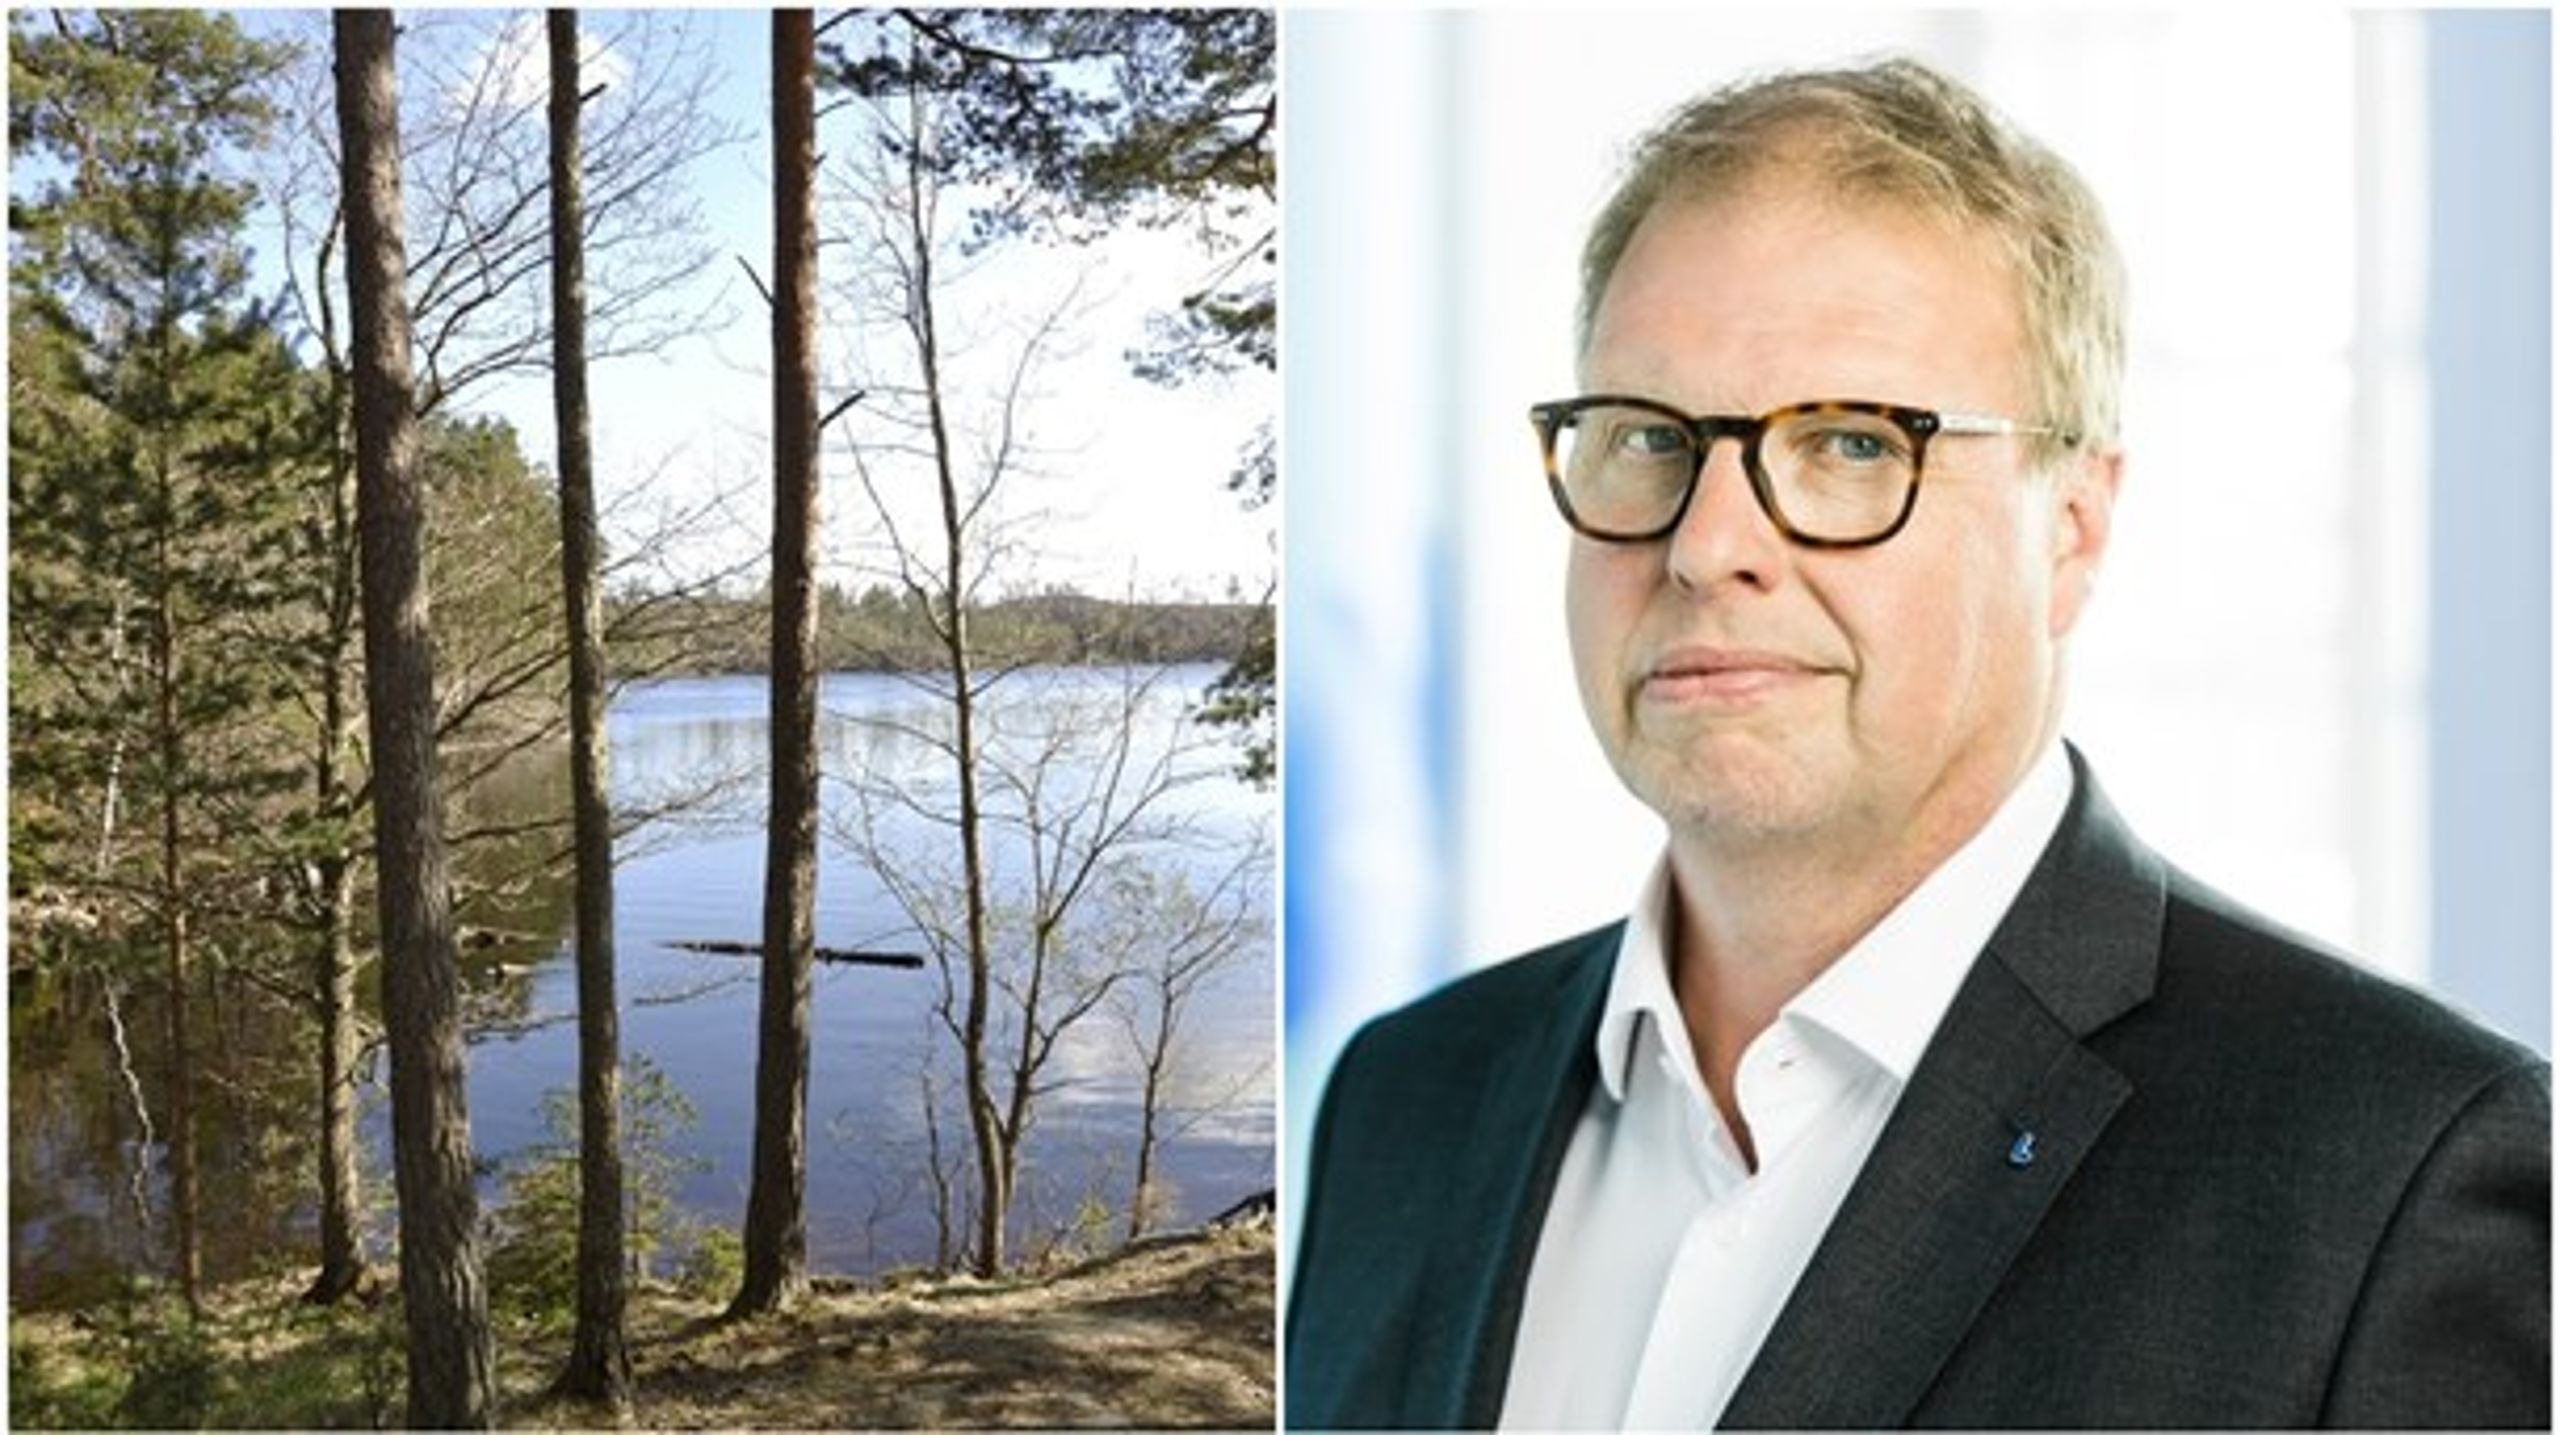 Från äganderätt i skogen till en bred parlamentarisk grundlagsutredning om äganderättsfrågor. KU-ledamot Bengt Eliasson (L) säger att tillkännagivandet blir ett kort i förhandlingarna med regeringen.